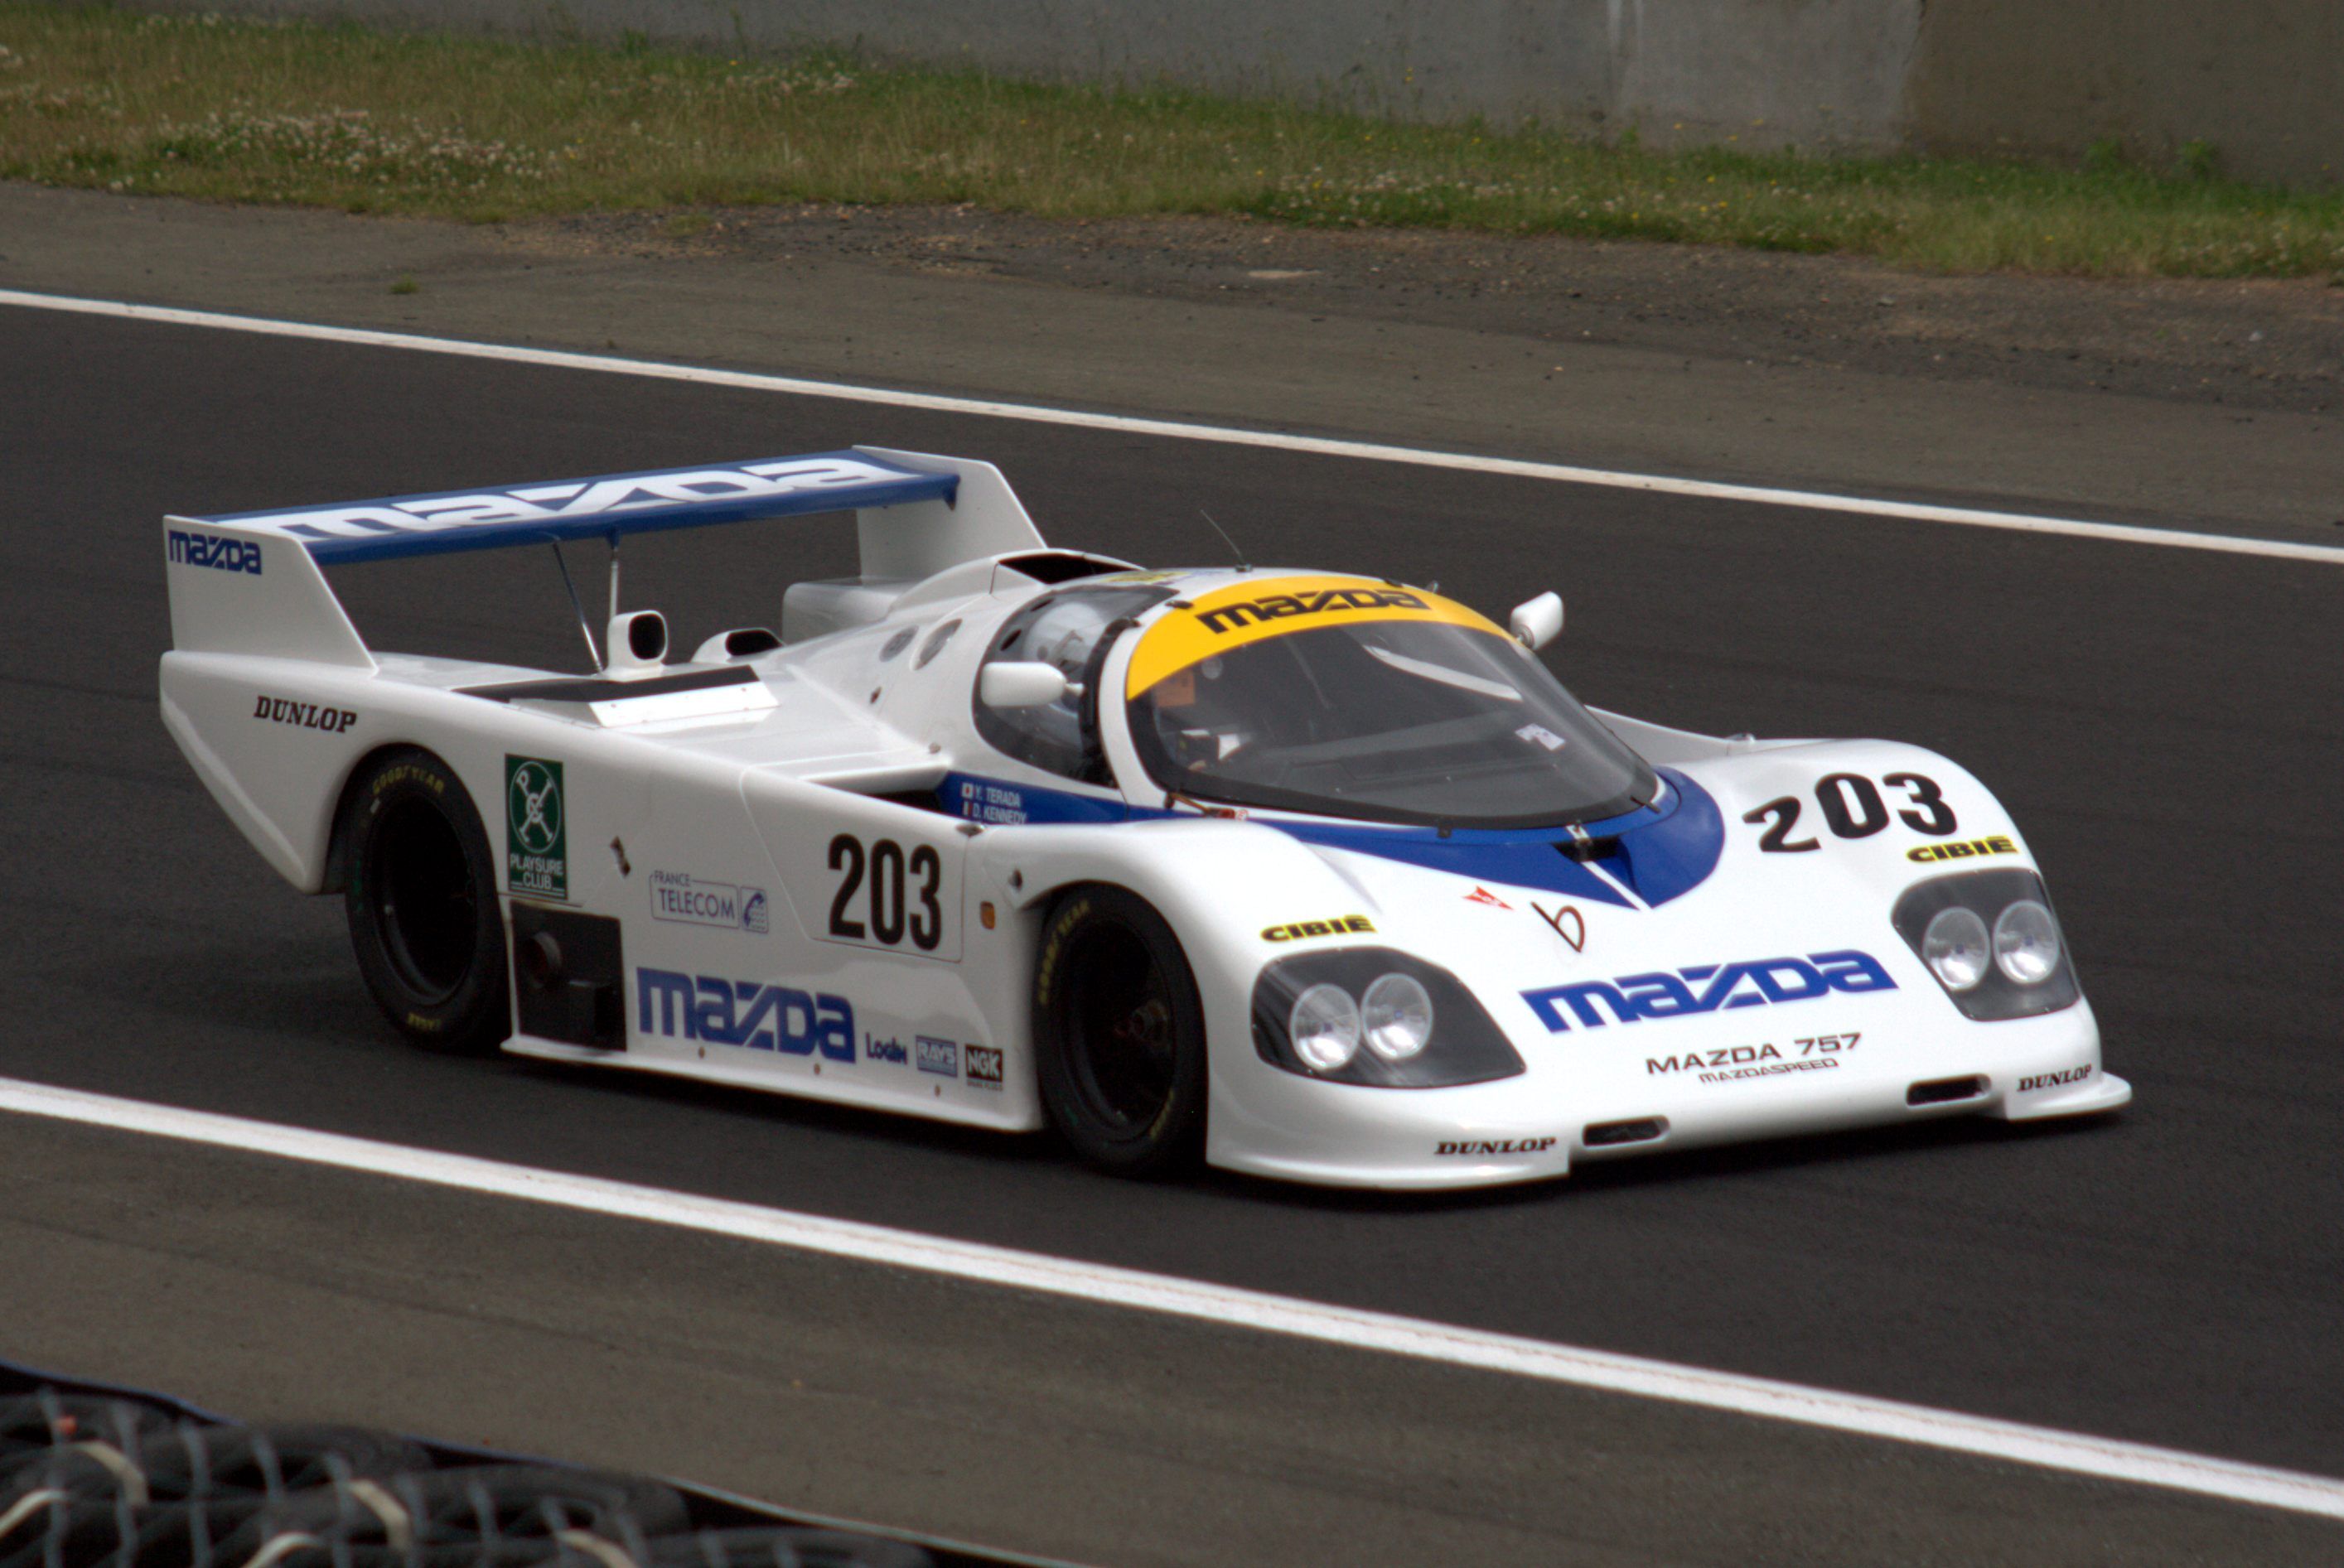 File:Mazda 757, LM Story, Le Mans.jpg